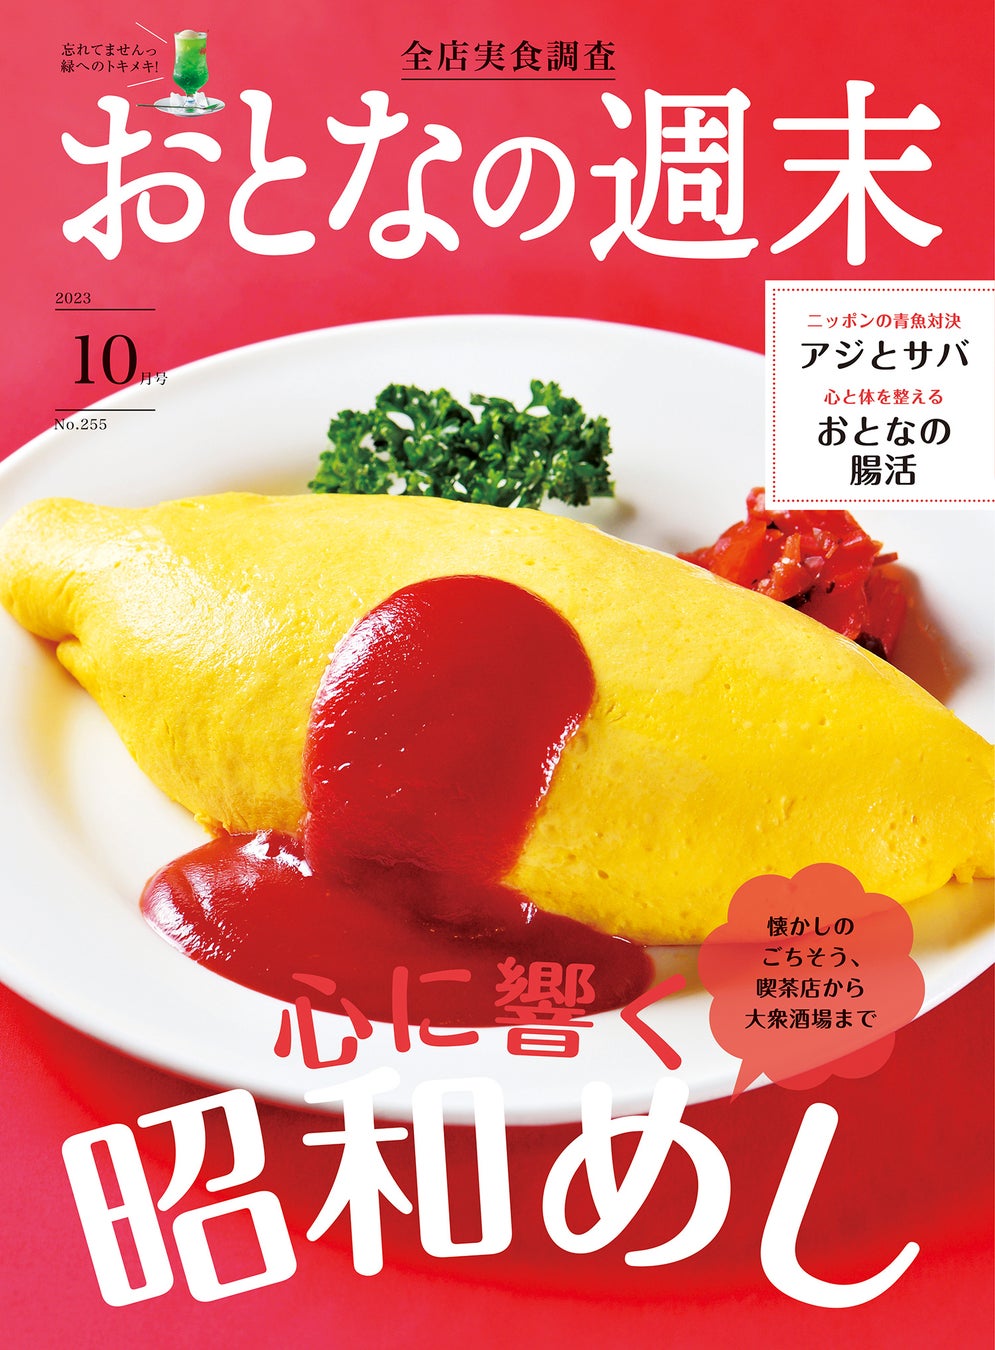 【天丼・天ぷら本舗 さん天】海老天マシマシフェアを開催